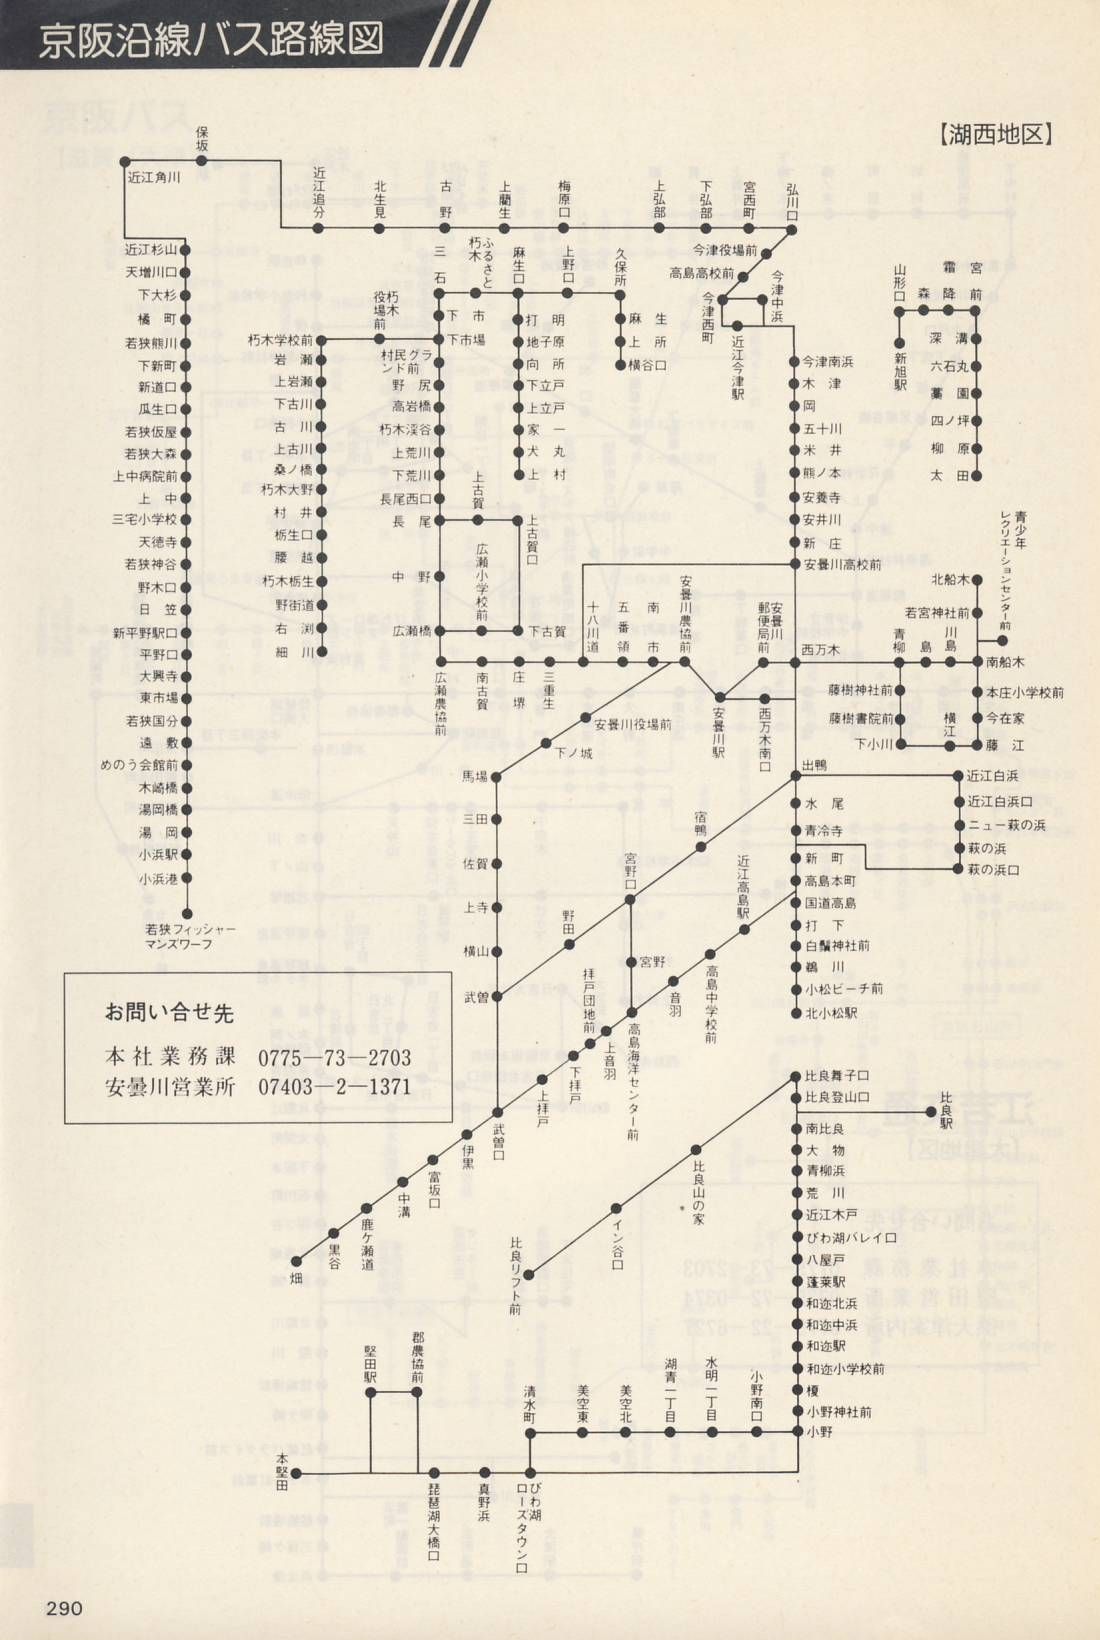 1987-06-01改正_京阪電気鉄道_冊子時刻表_290(江若交通路線図)